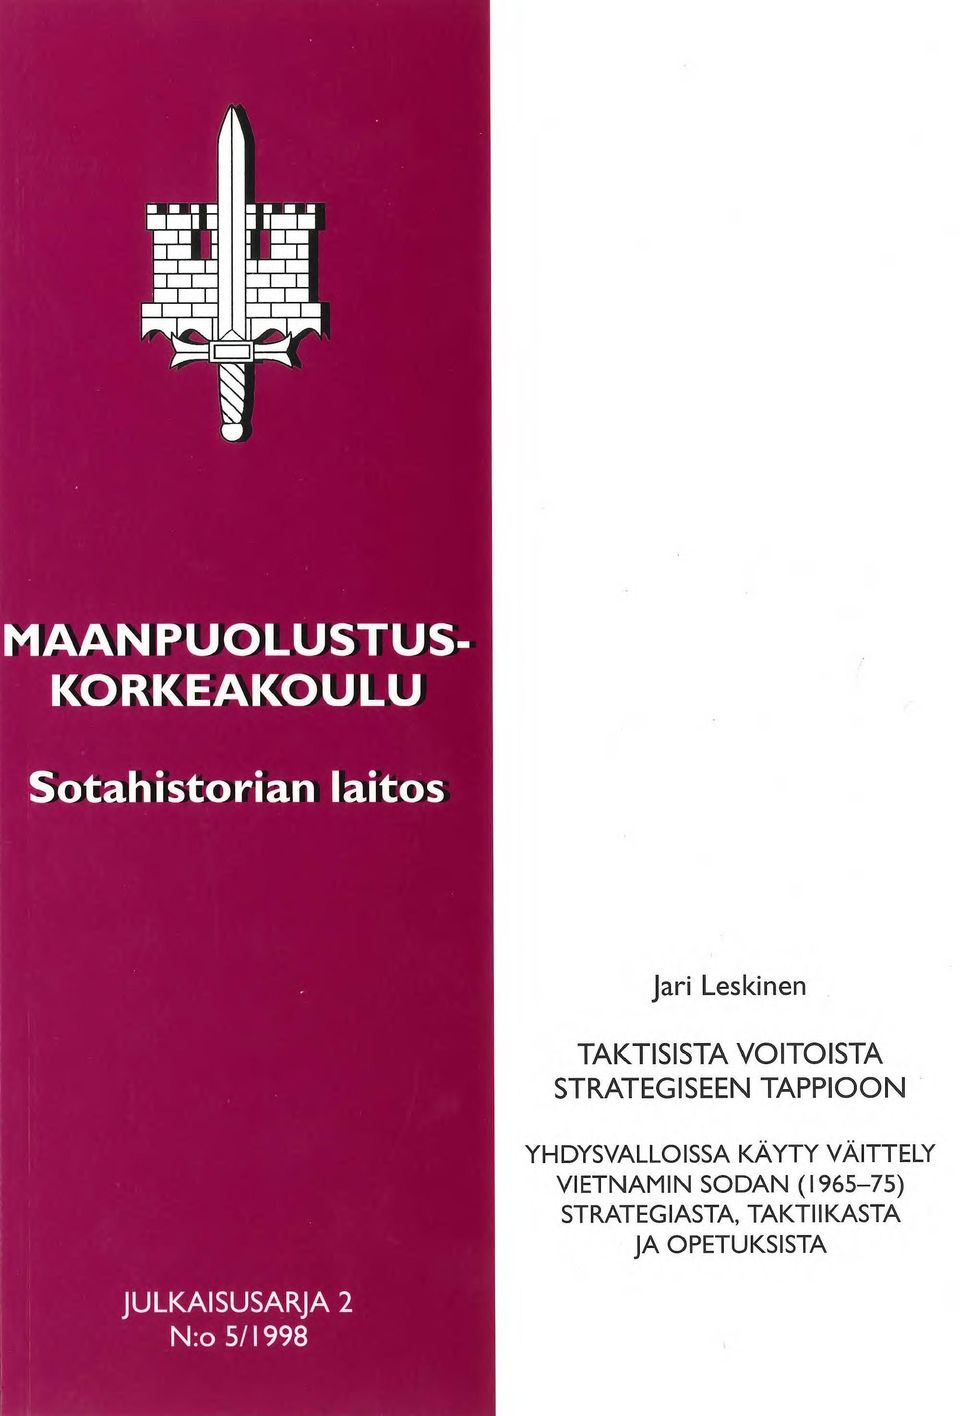 YHDYSVALLOISSA KÄYTY VÄITTELY VIETNAMIN SODAN (1965-75)